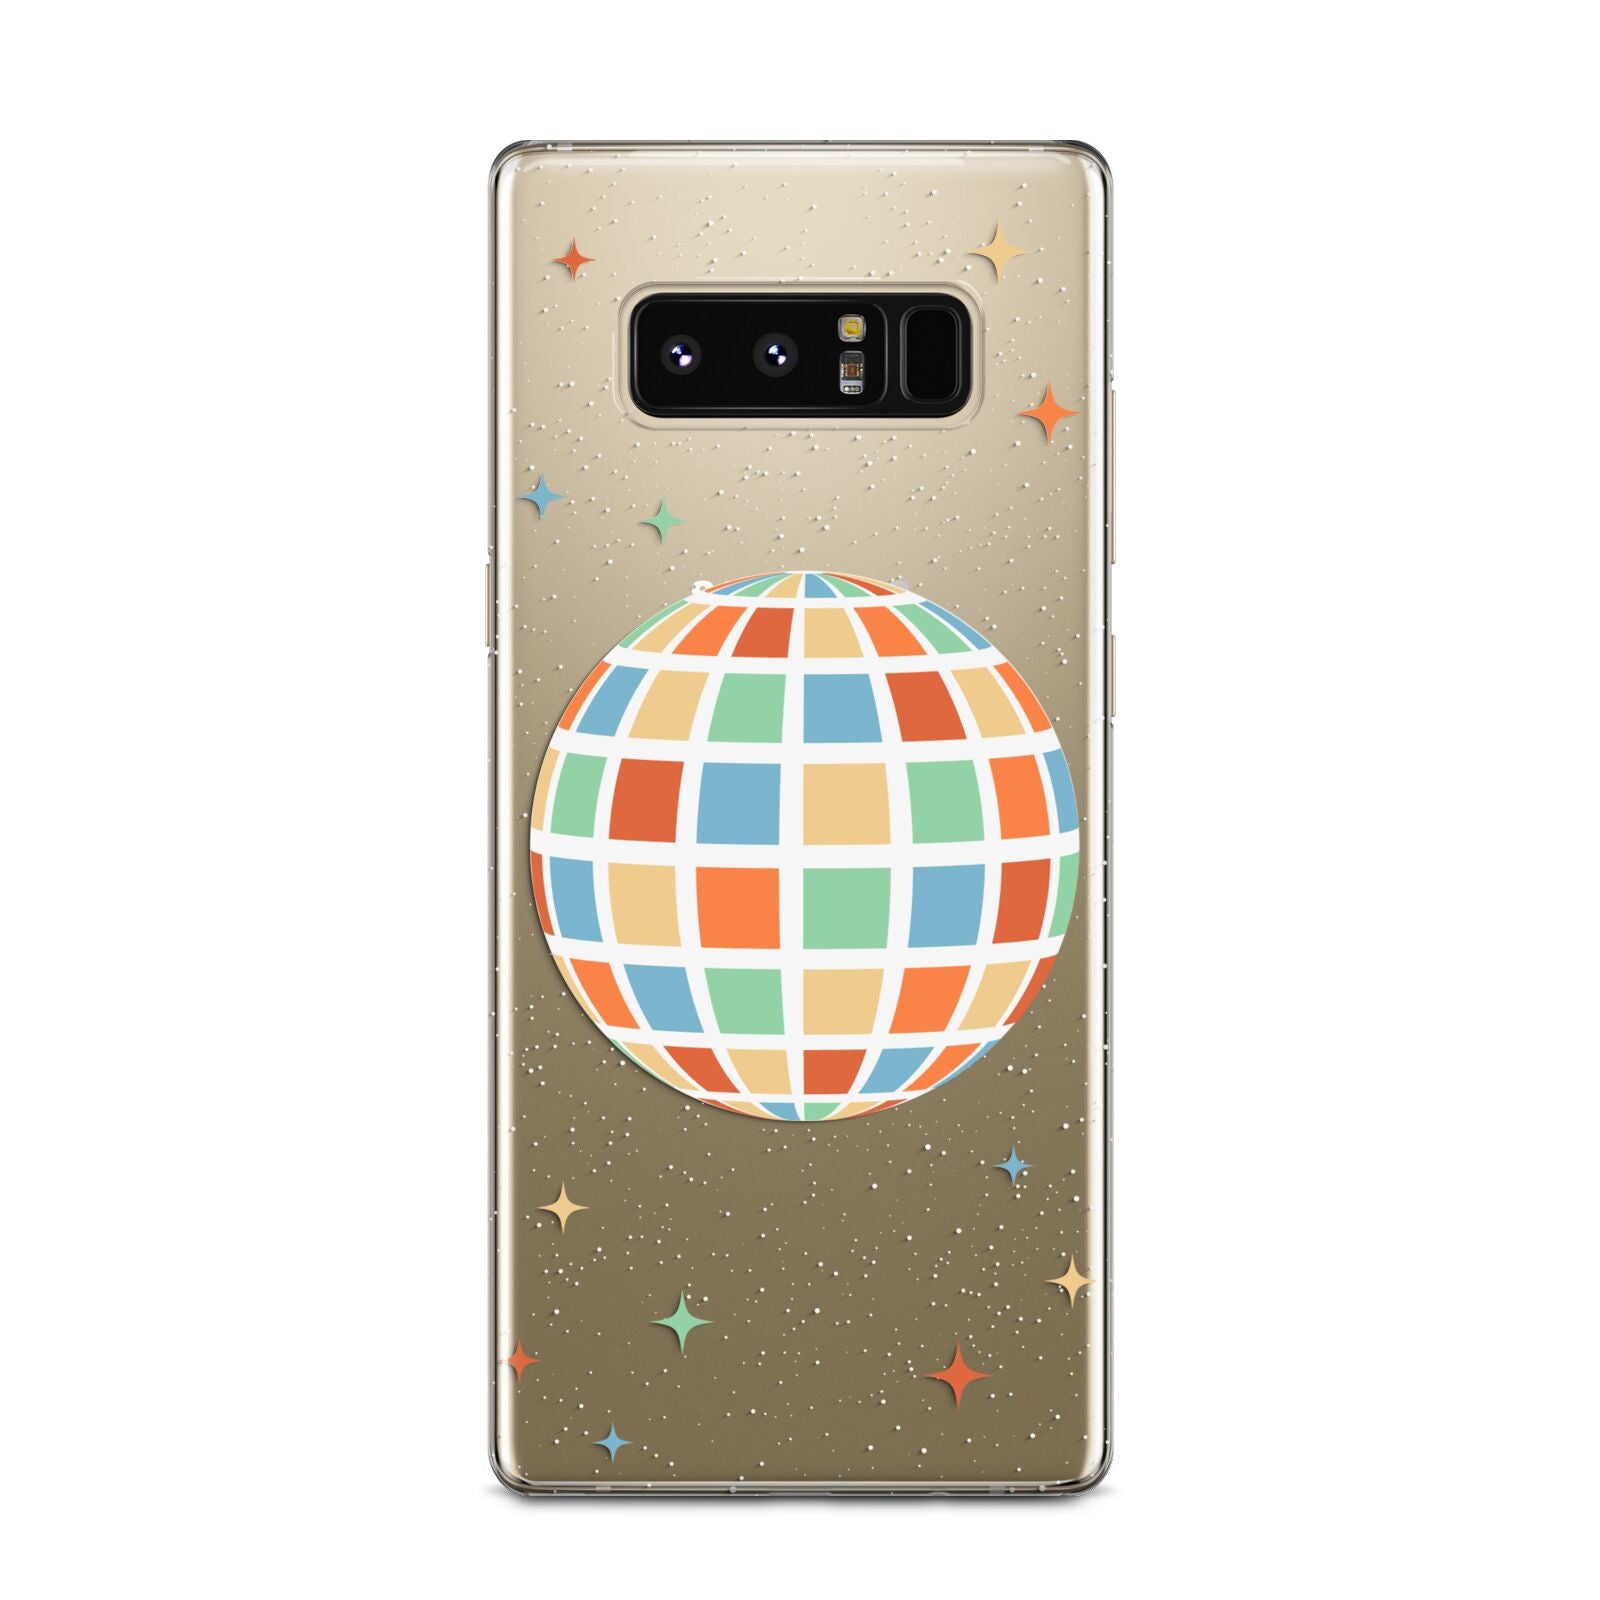 Disco Ball Samsung Galaxy Note 8 Case